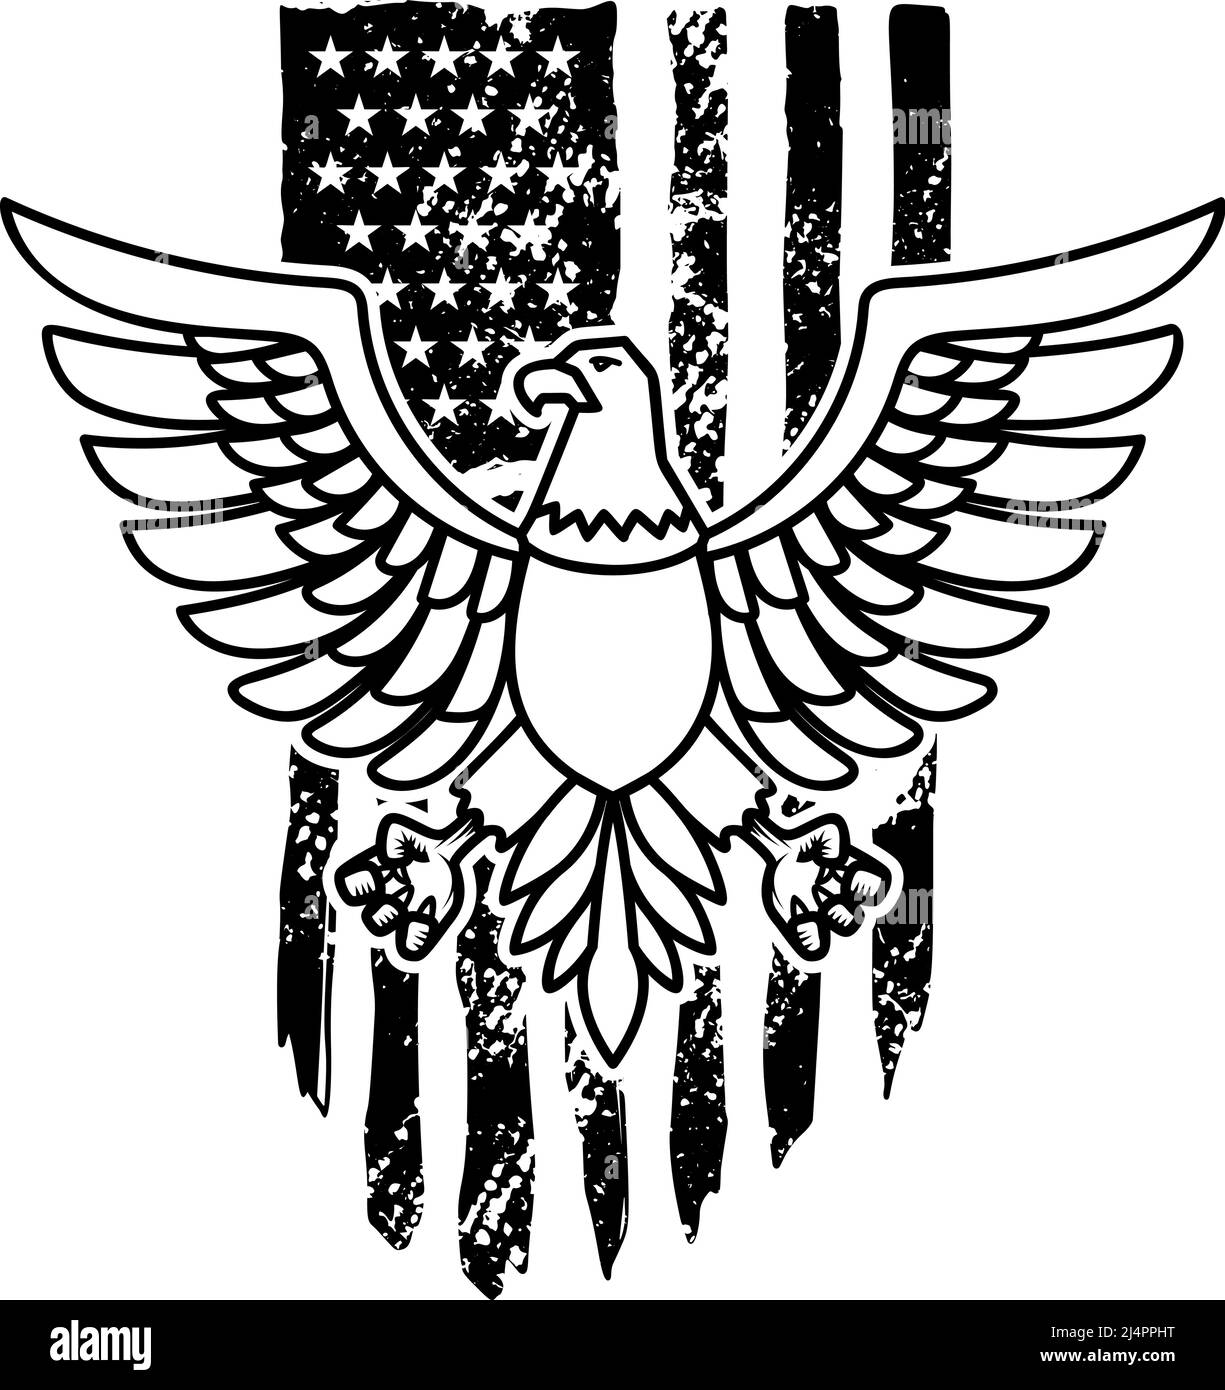 Eagle on american flag background. Design element for logo, emblem, sign, poster, t shirt. Vector illustration Stock Vector